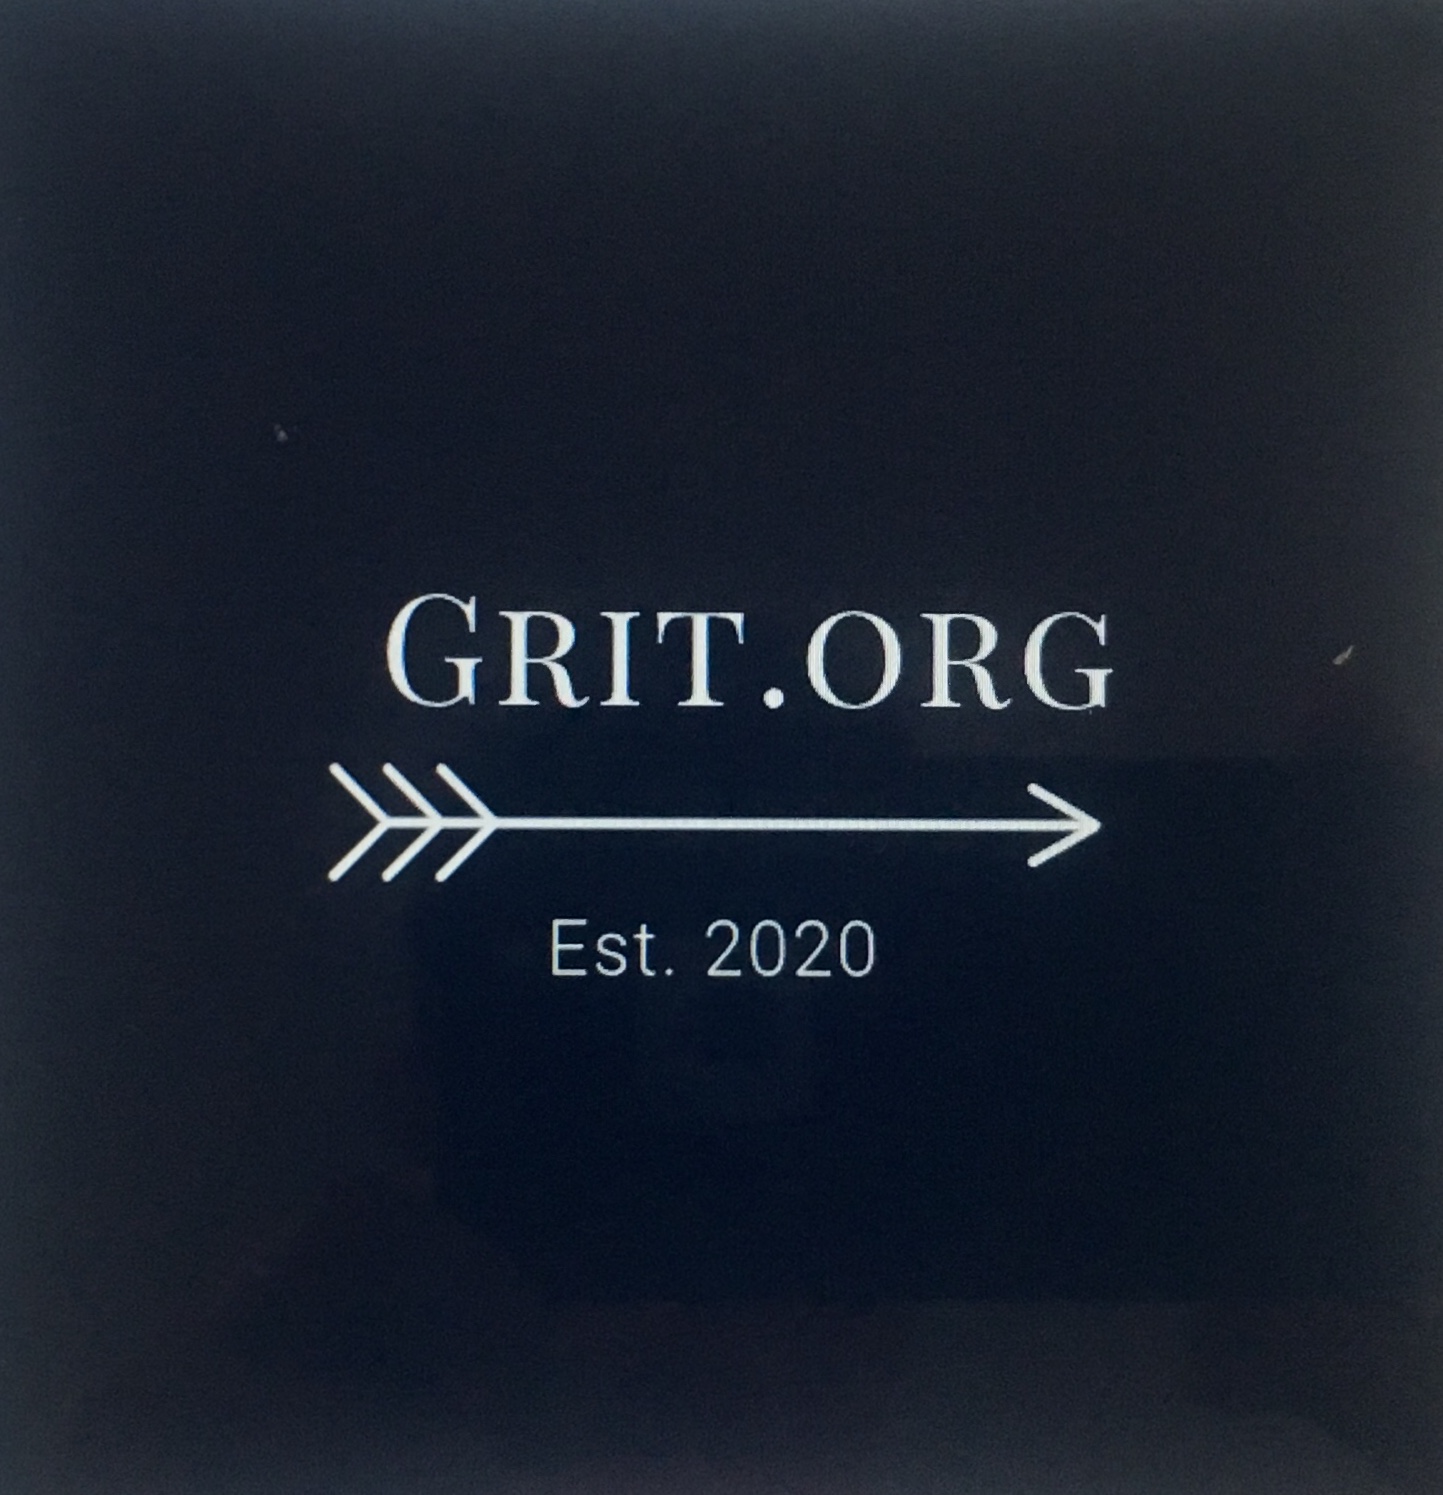 Grit.org